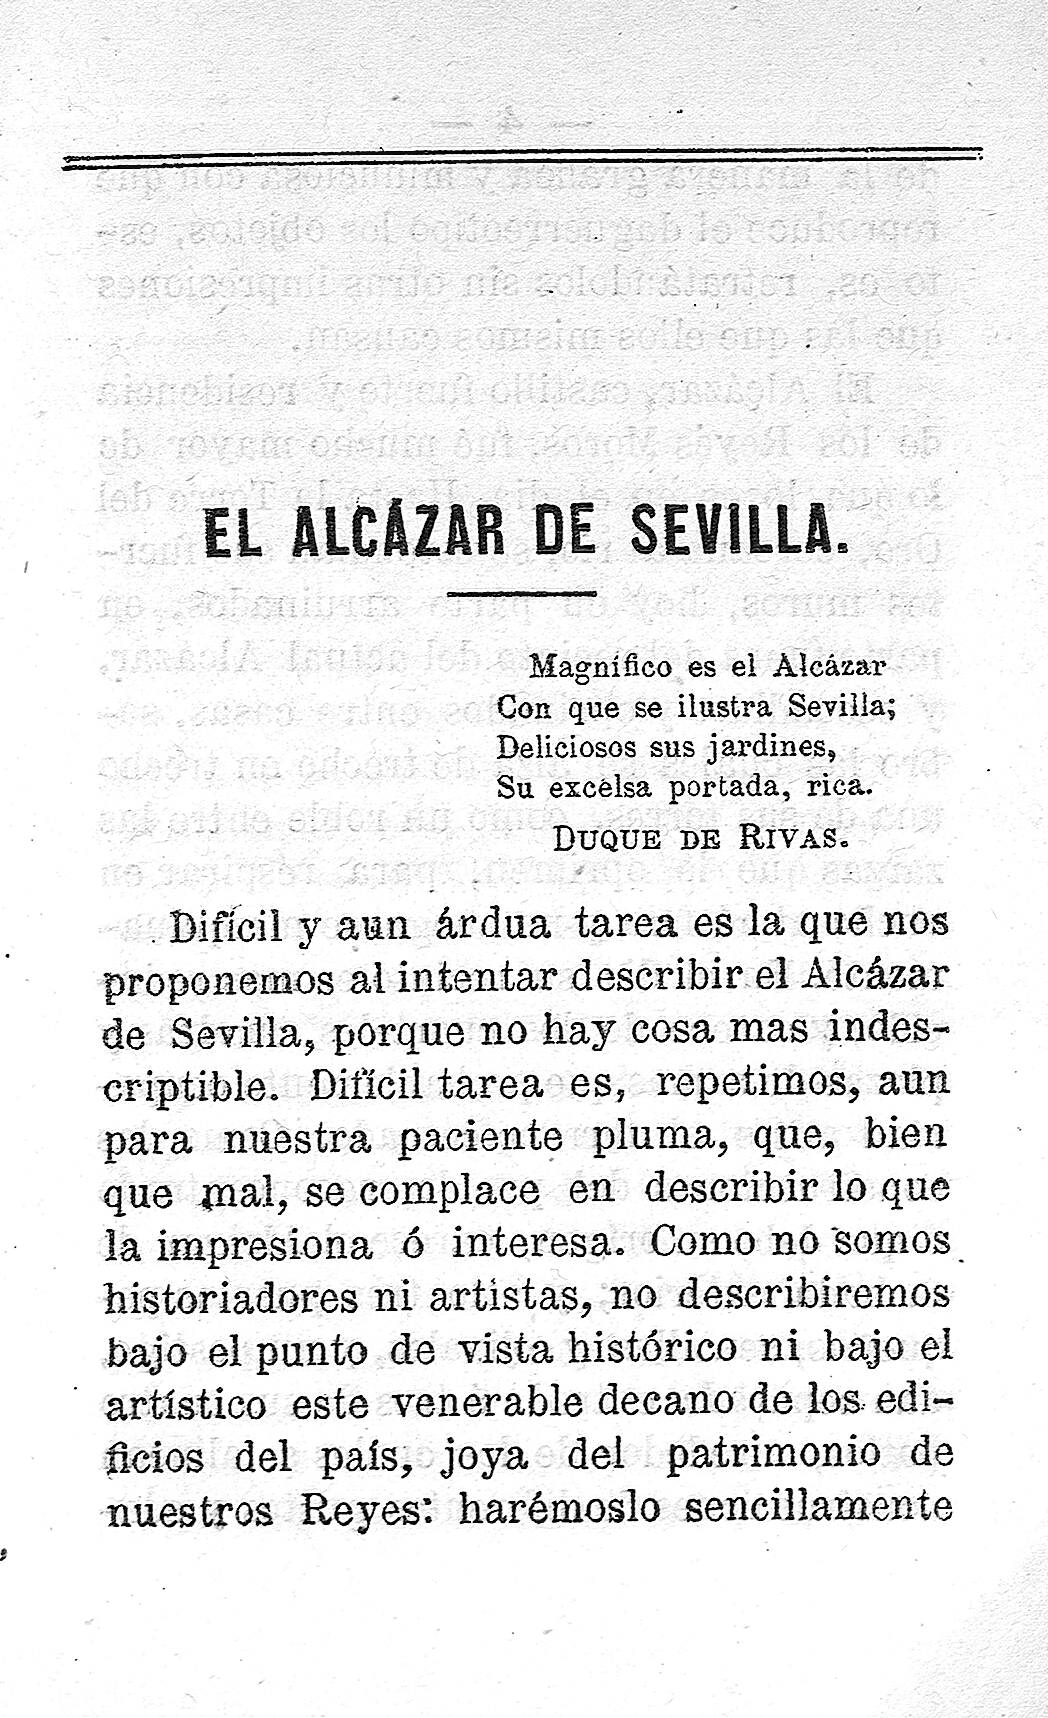 El Alcazar de Sevilla